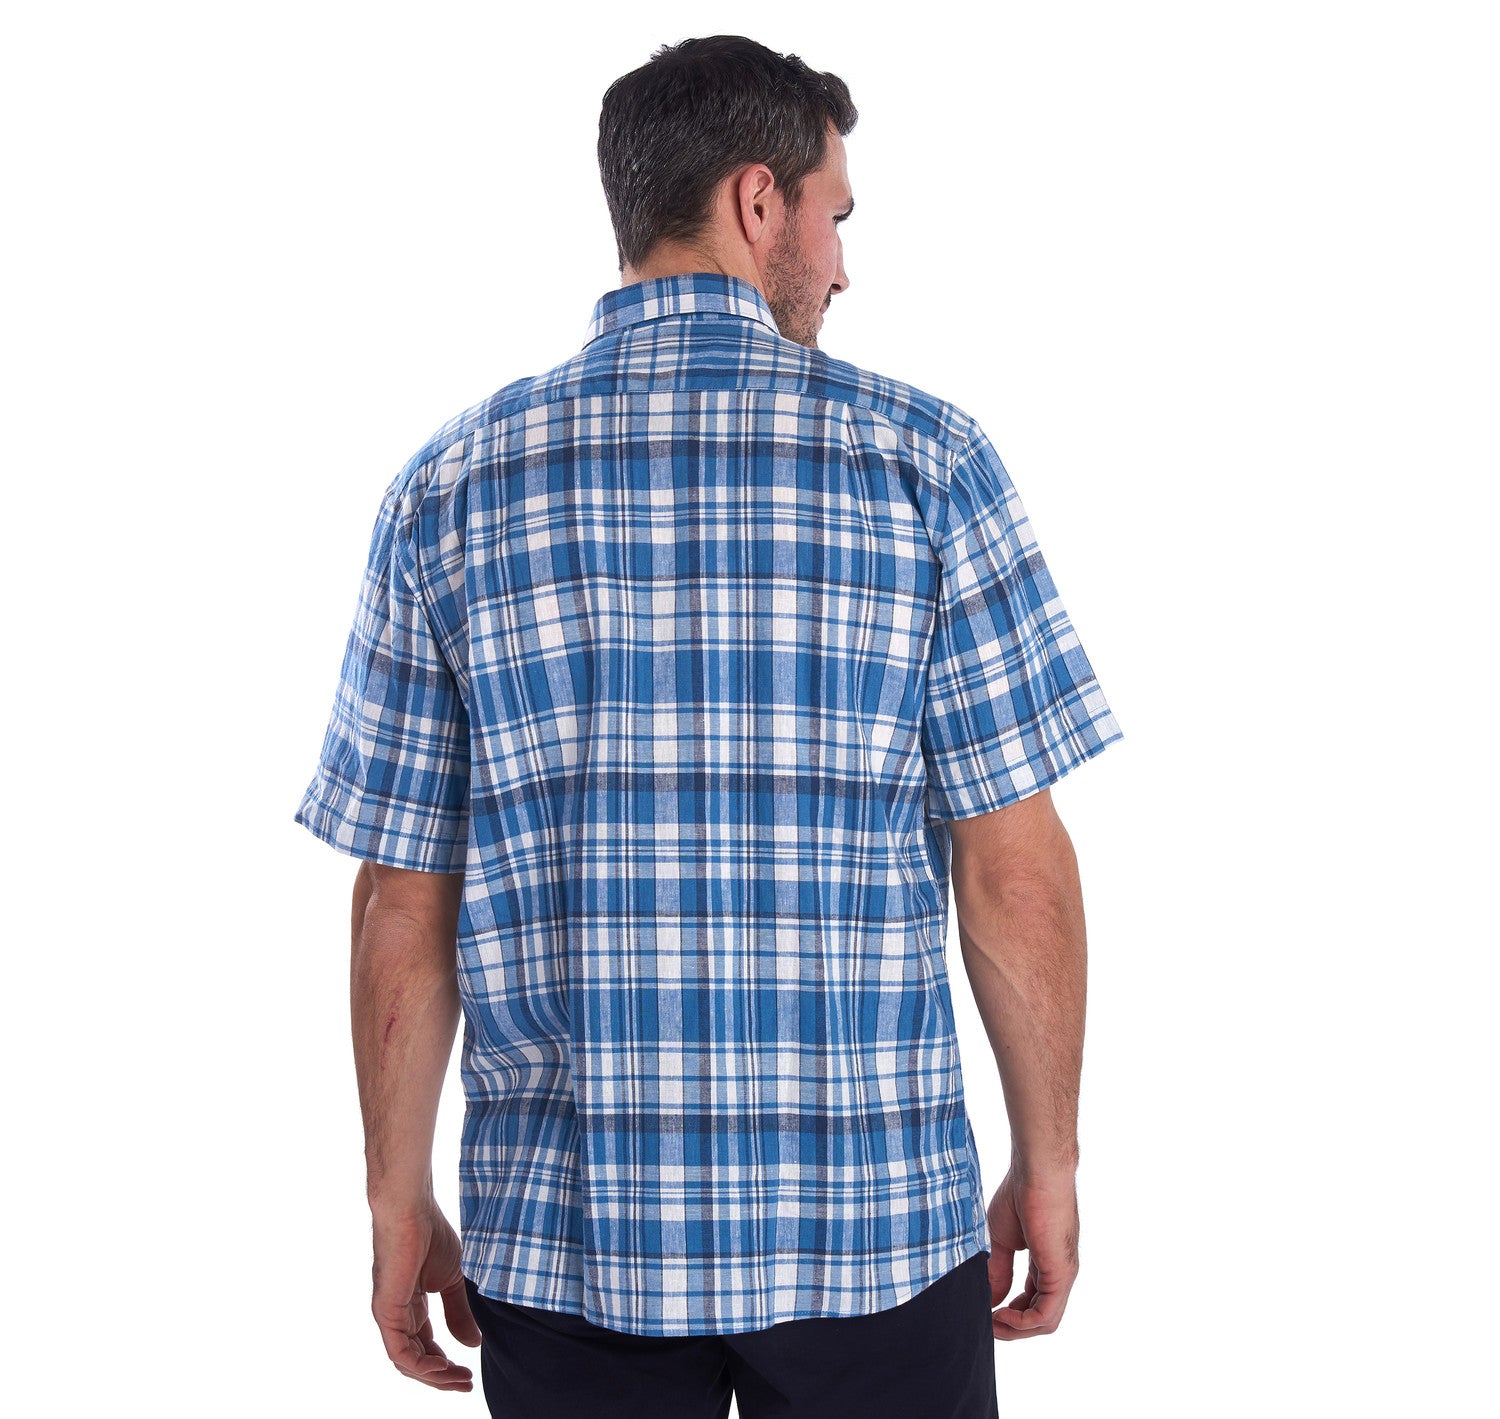 Linen Short Sleeve Shirt - Blue